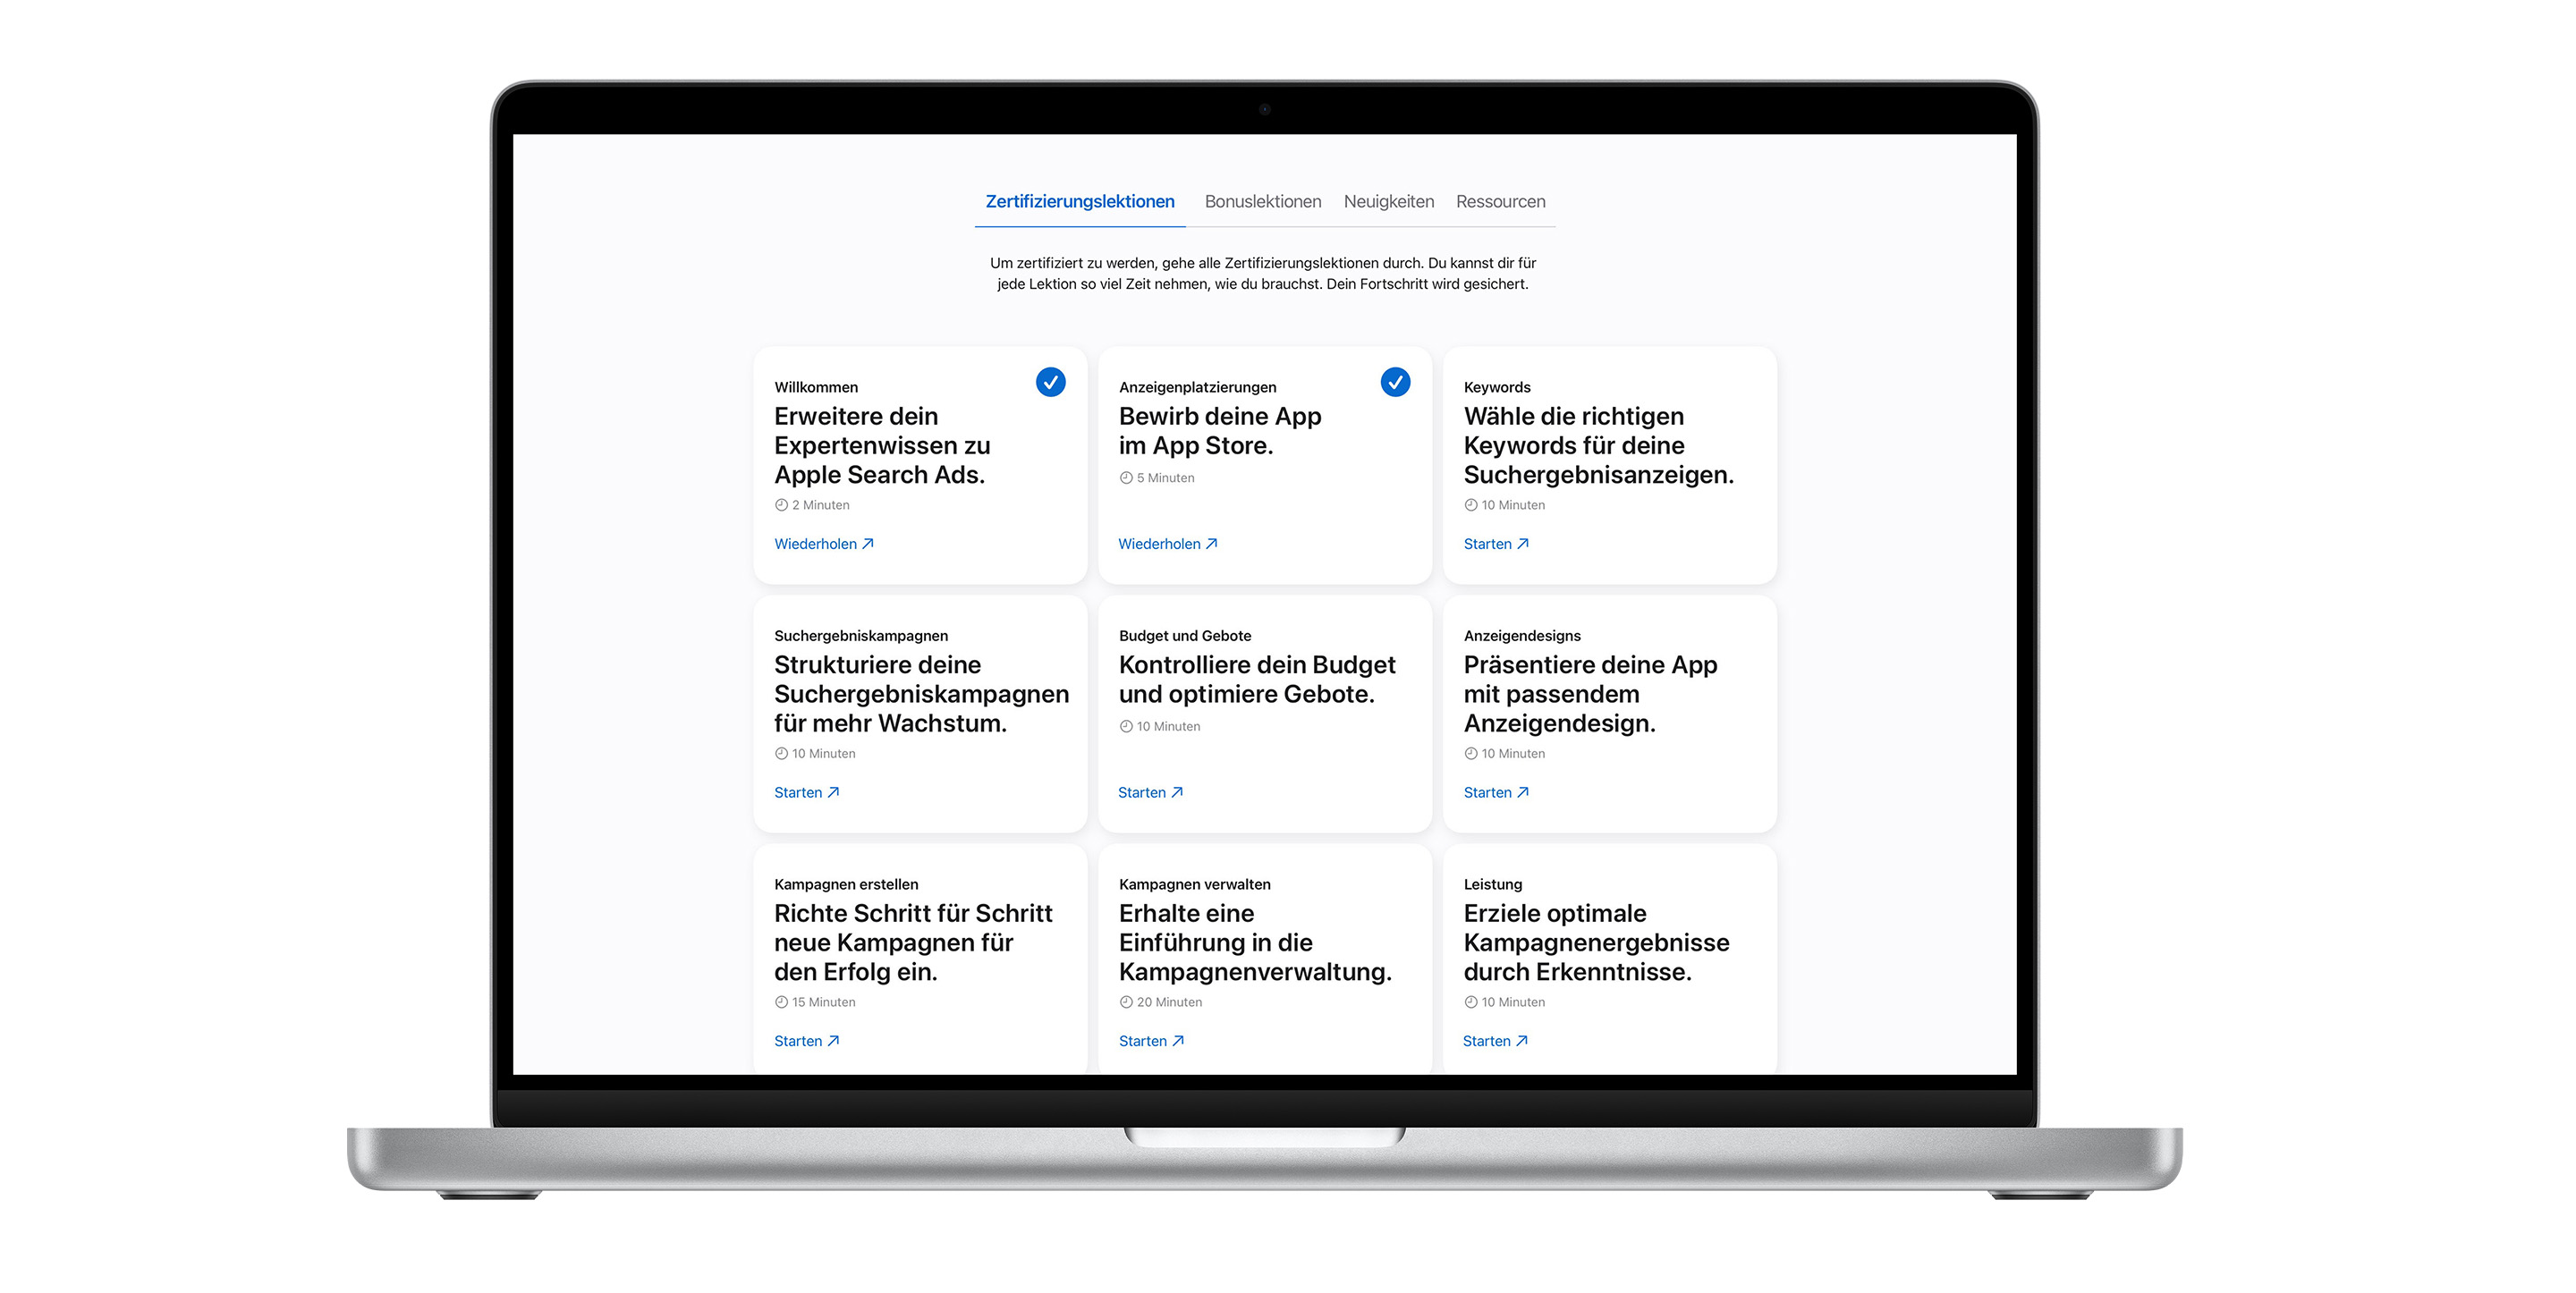 Die Lektionsseite zur Apple Search Ads Zertifizierung mit neun Lektionsmodulen. Die ersten beiden Lektionen sind mit blauen Häkchen versehen, die anzeigen, dass sie abgeschlossen sind.